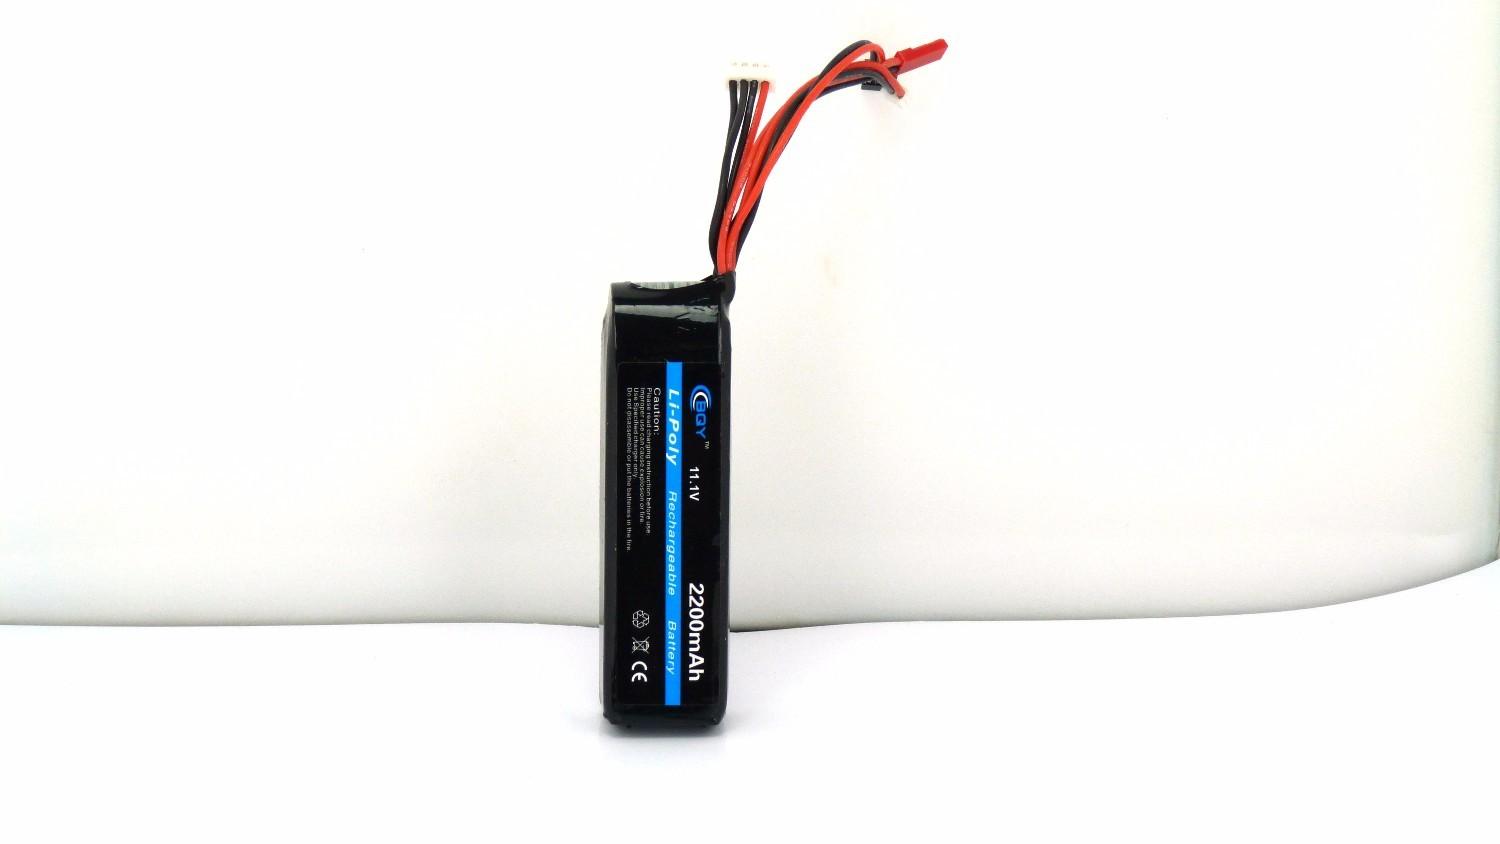 Hot Power 11.1v 3s 2200mah 20C Battery Li-Po Rechargeable Battery - UK Seller NP